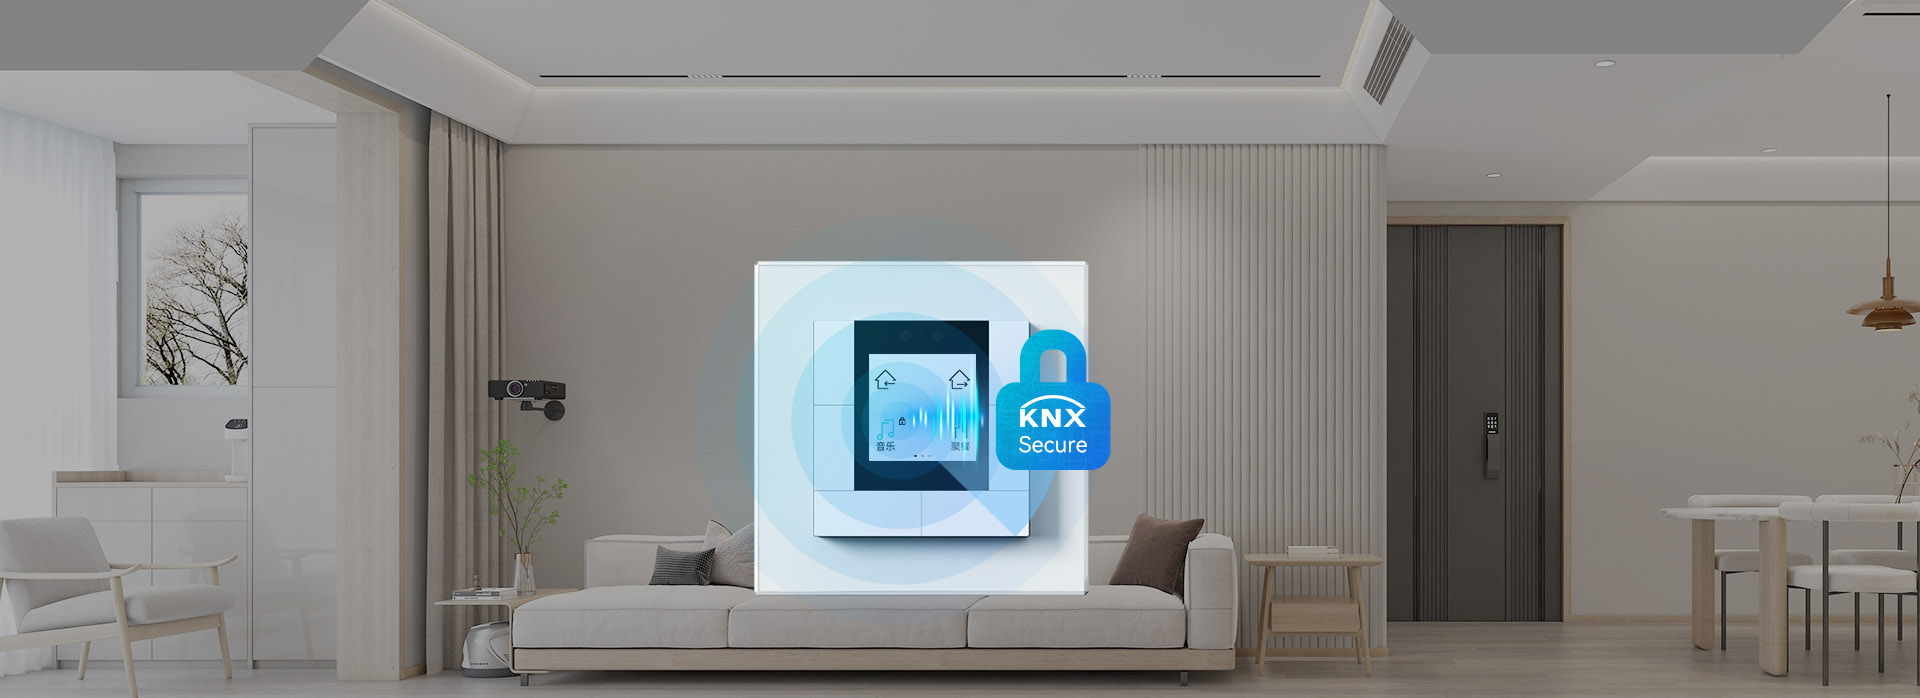 欧标智能屏键面板支持KNX数据安全